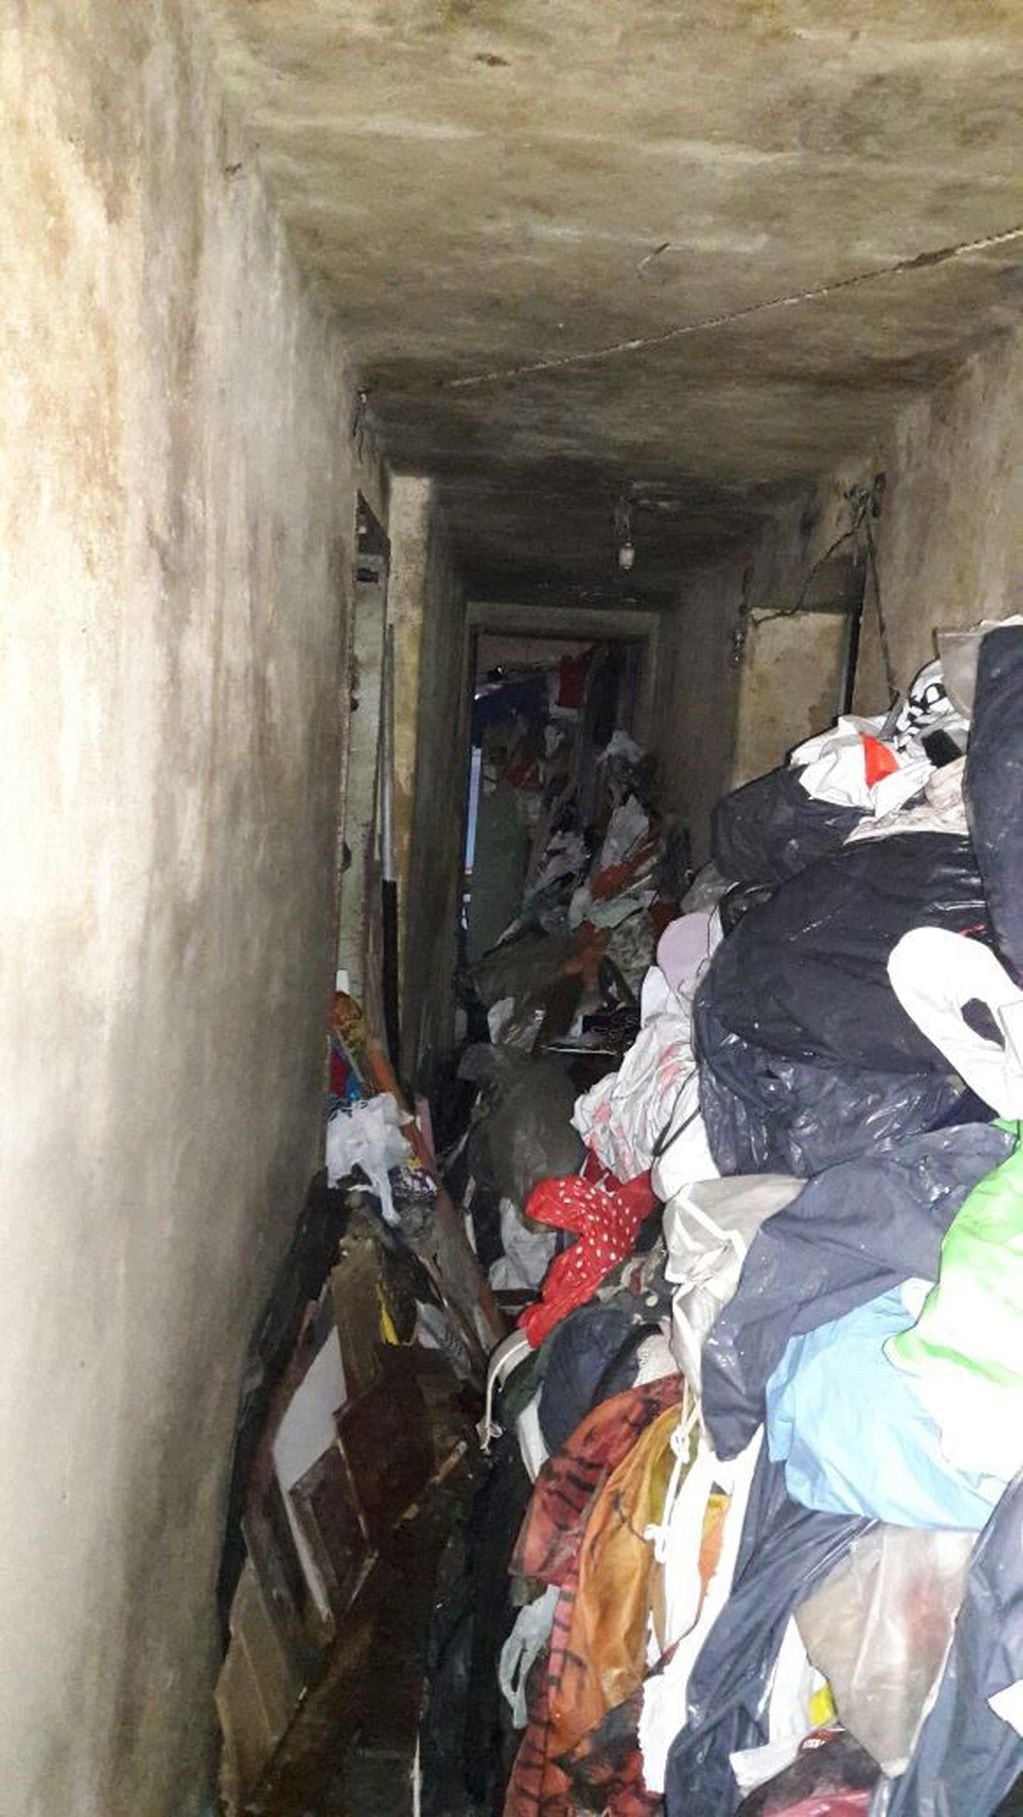 La Justicia de Rosario ordenó desalojar y limpiar una casa cuyos dueños son acumuladores de basura.